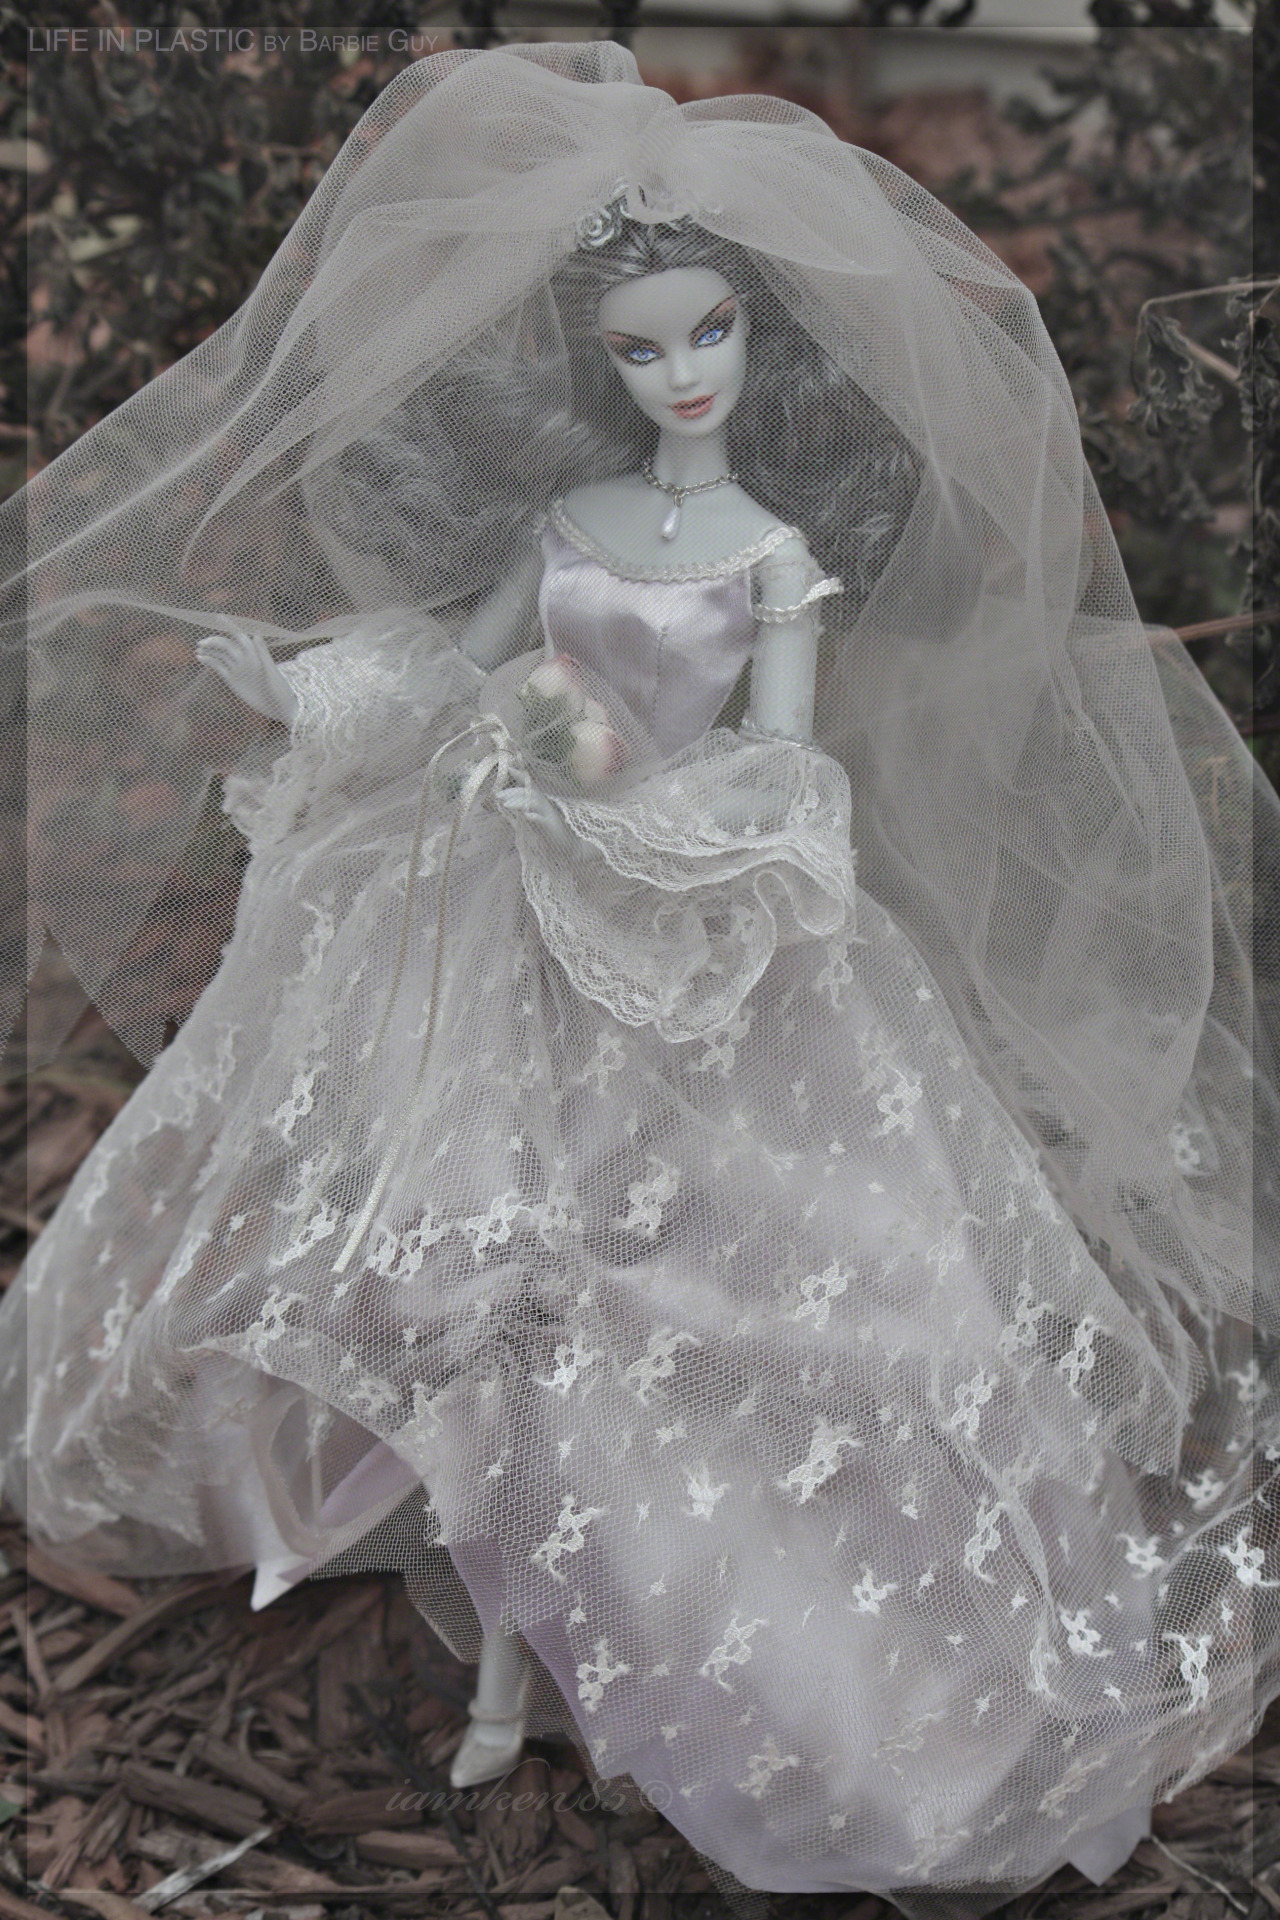 Haunted Beauty Zombie Bride on Sale, | www.fderechoydiscapacidad.es